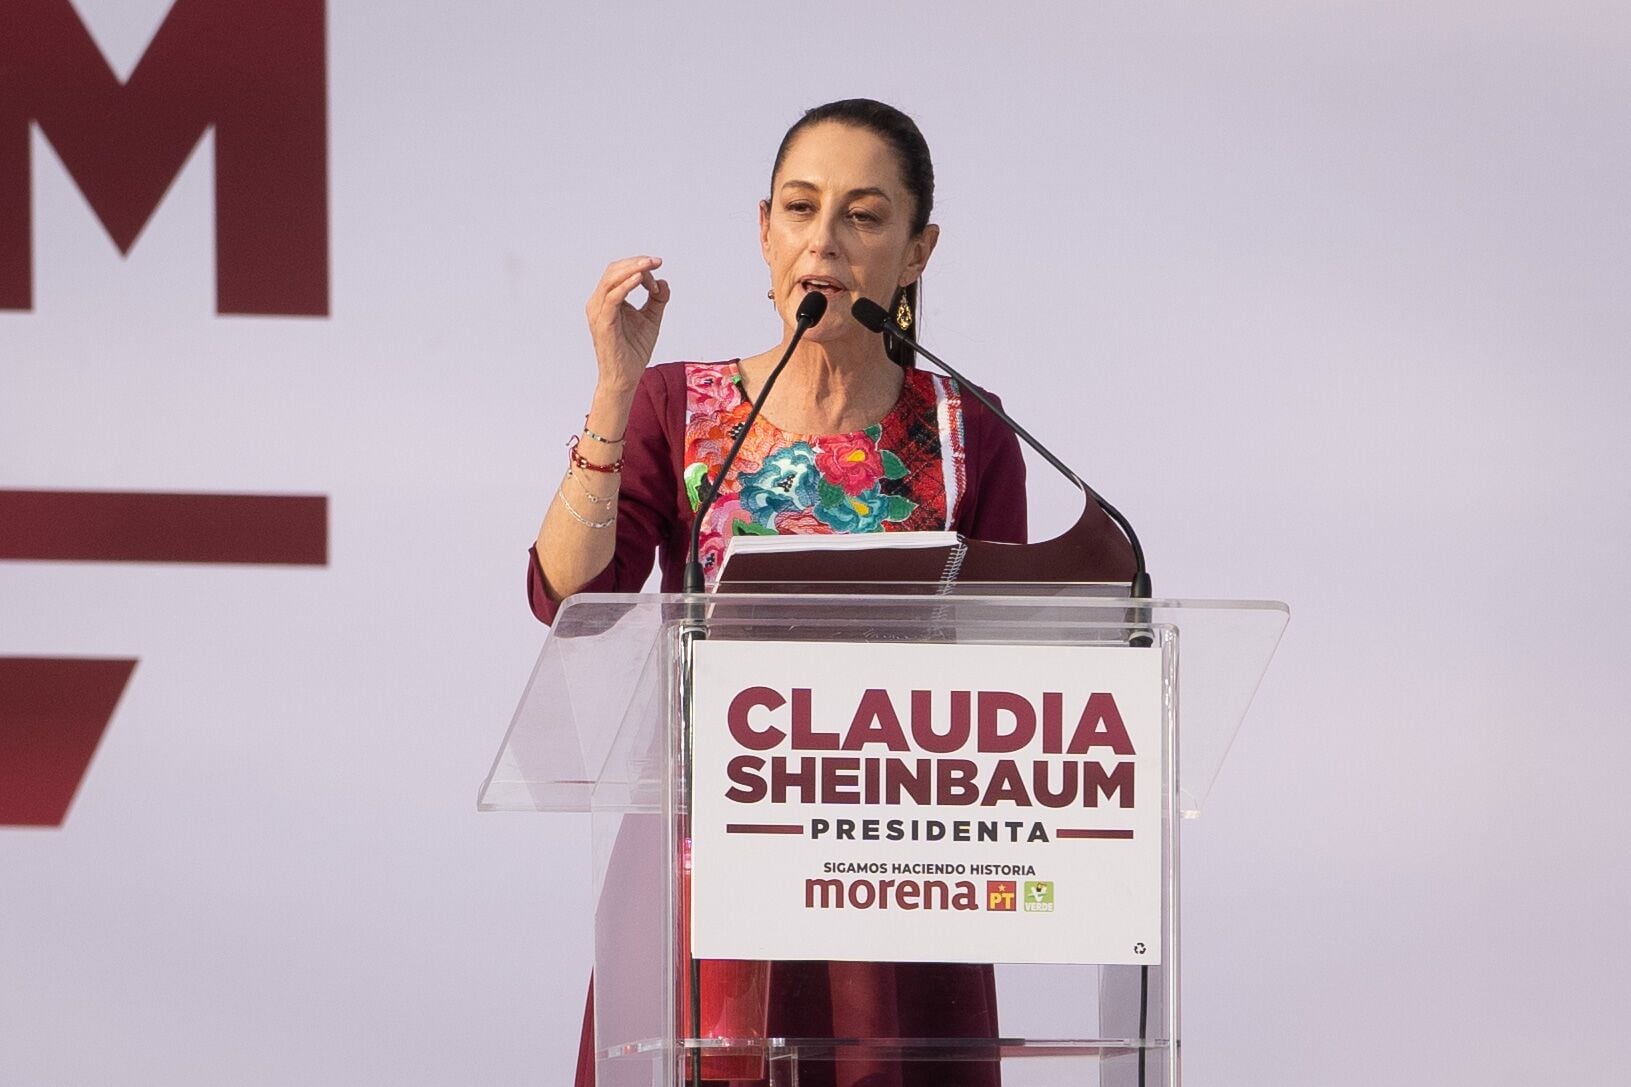 La candidata de Morena reconoció que la situación de Pemex merece especial atención. FOTO: Victoria Razo/Bloomberg